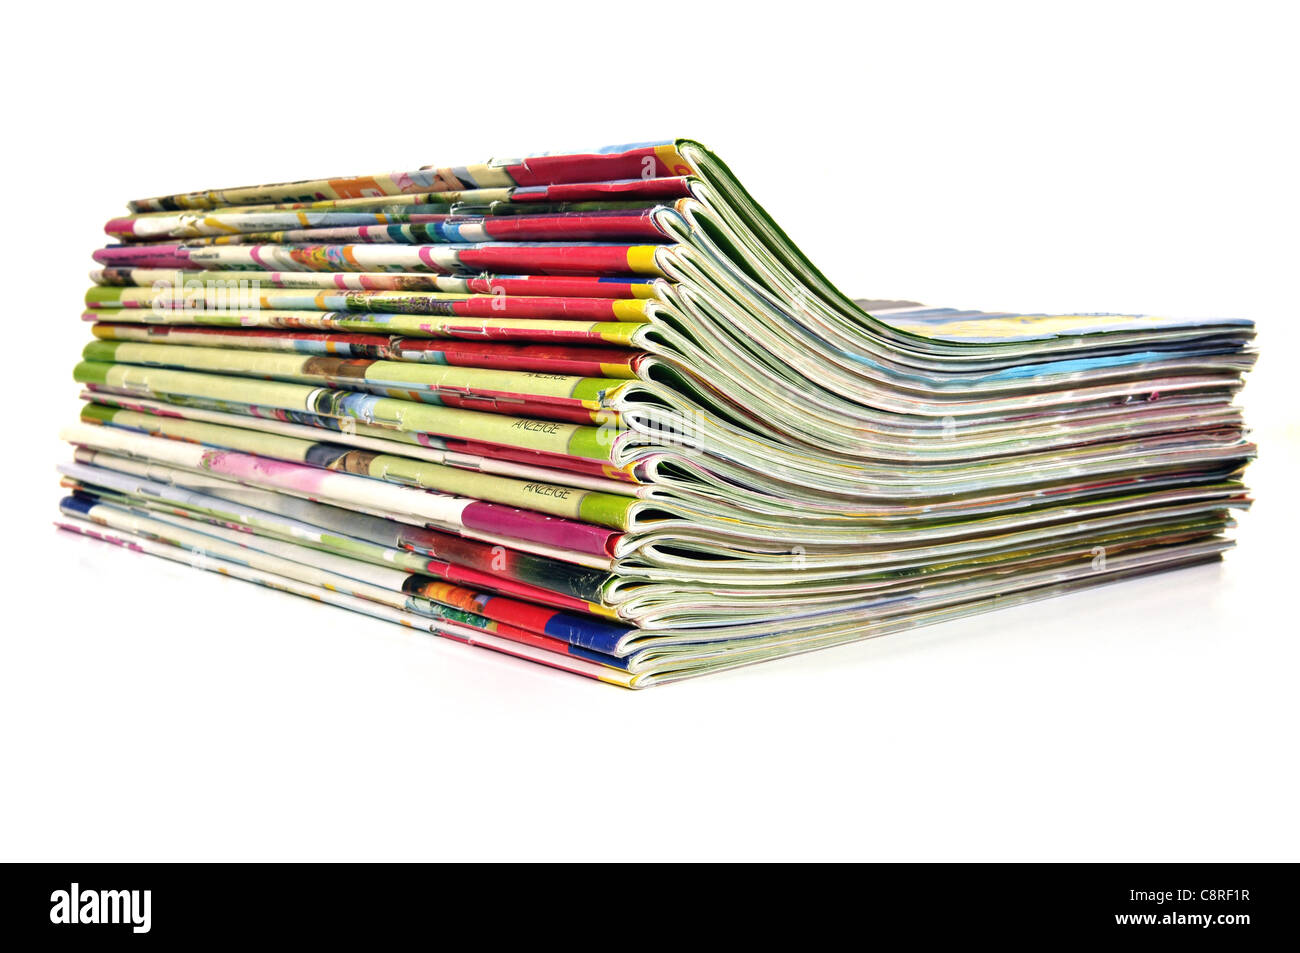 Tas de différents magazines multicolores sur fond blanc Banque D'Images